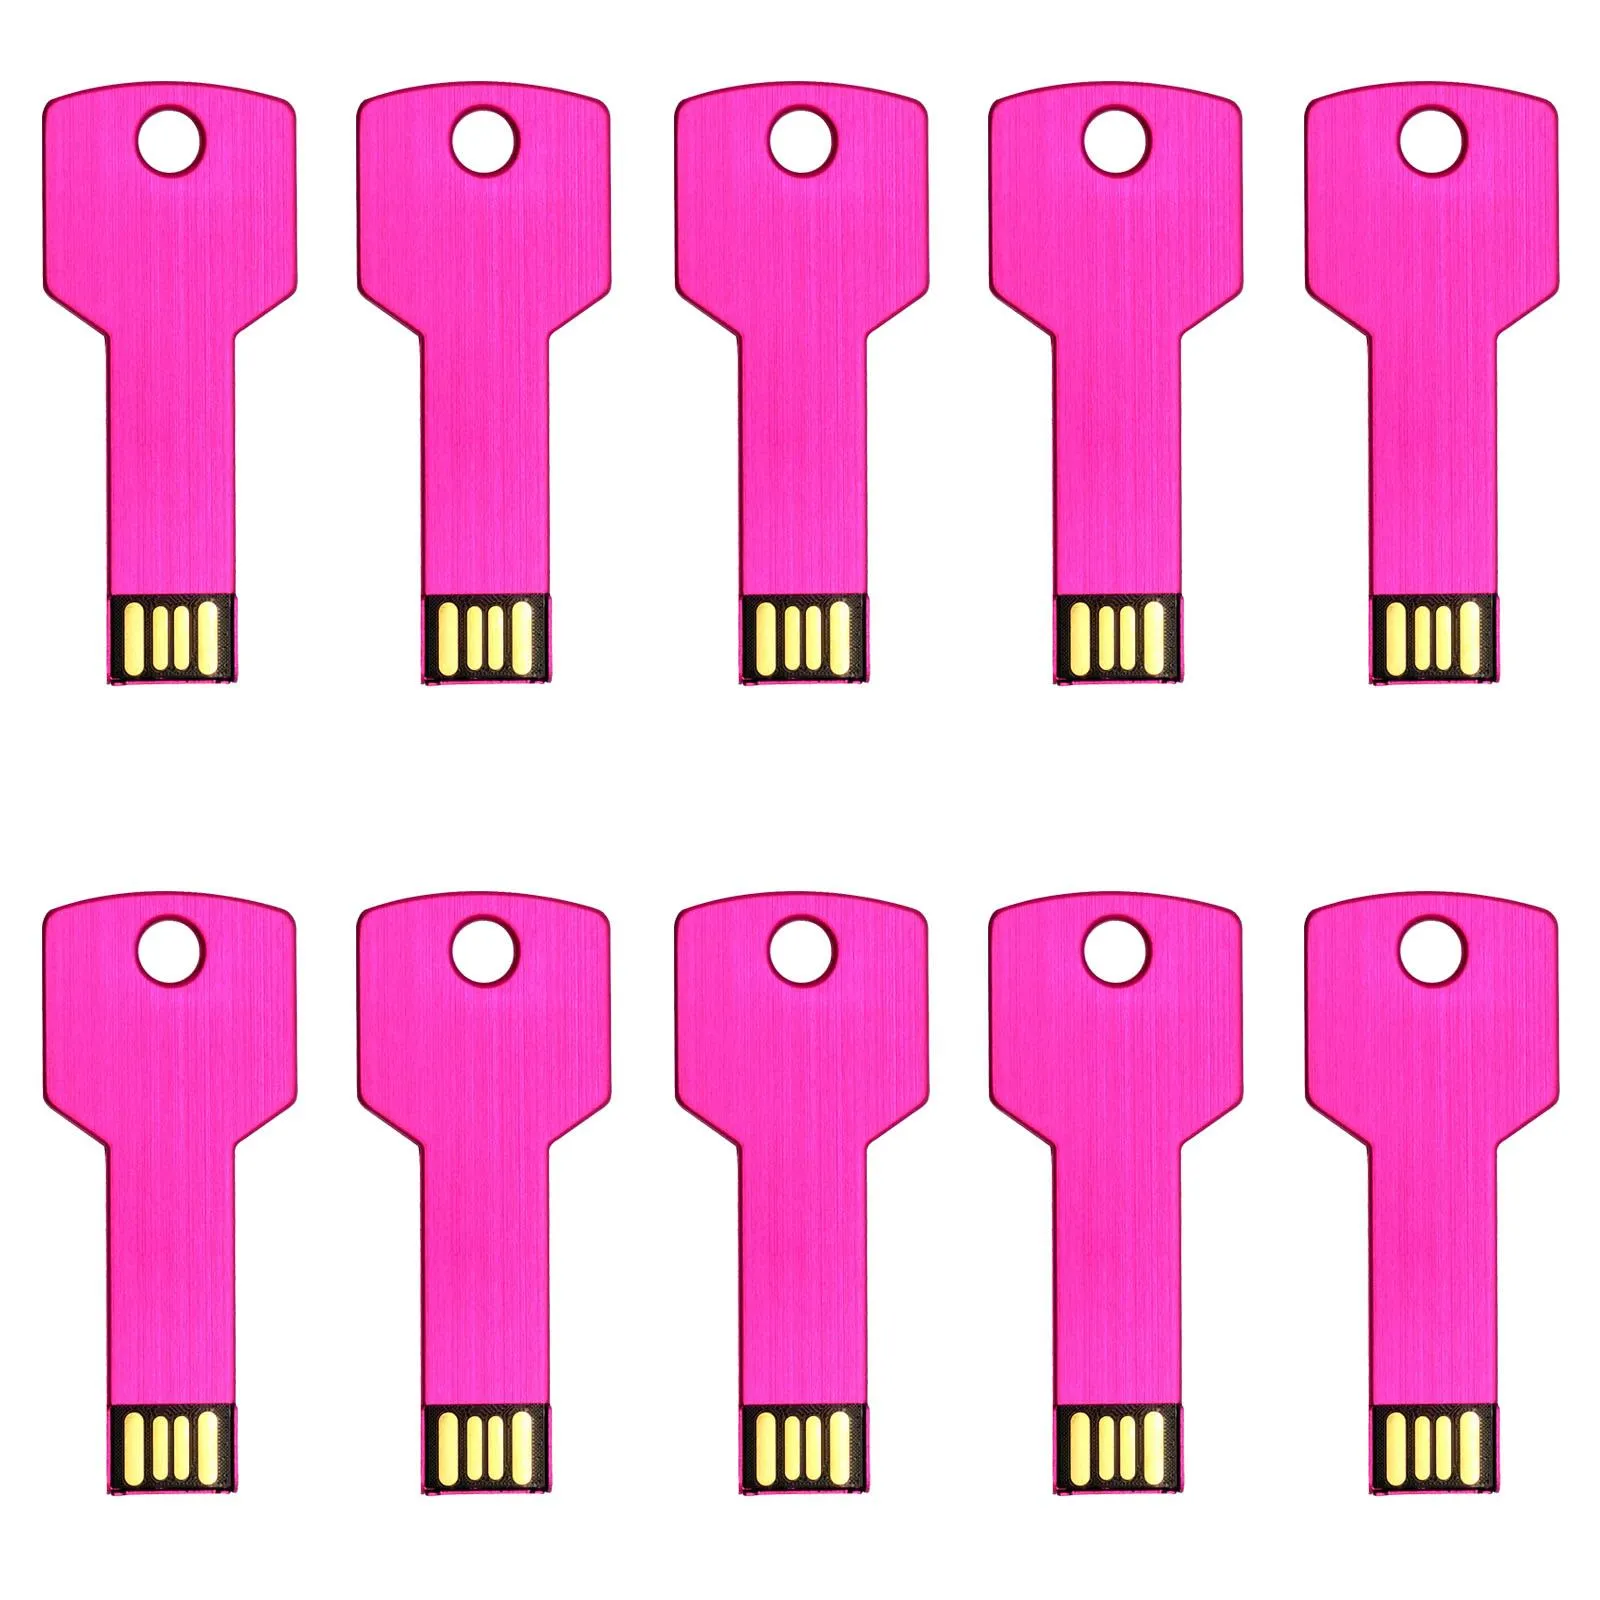 Livraison gratuite 10 PCS/Lot clés USB 8GB clé en métal conception en forme de clés USB pour le stockage de données informatiques